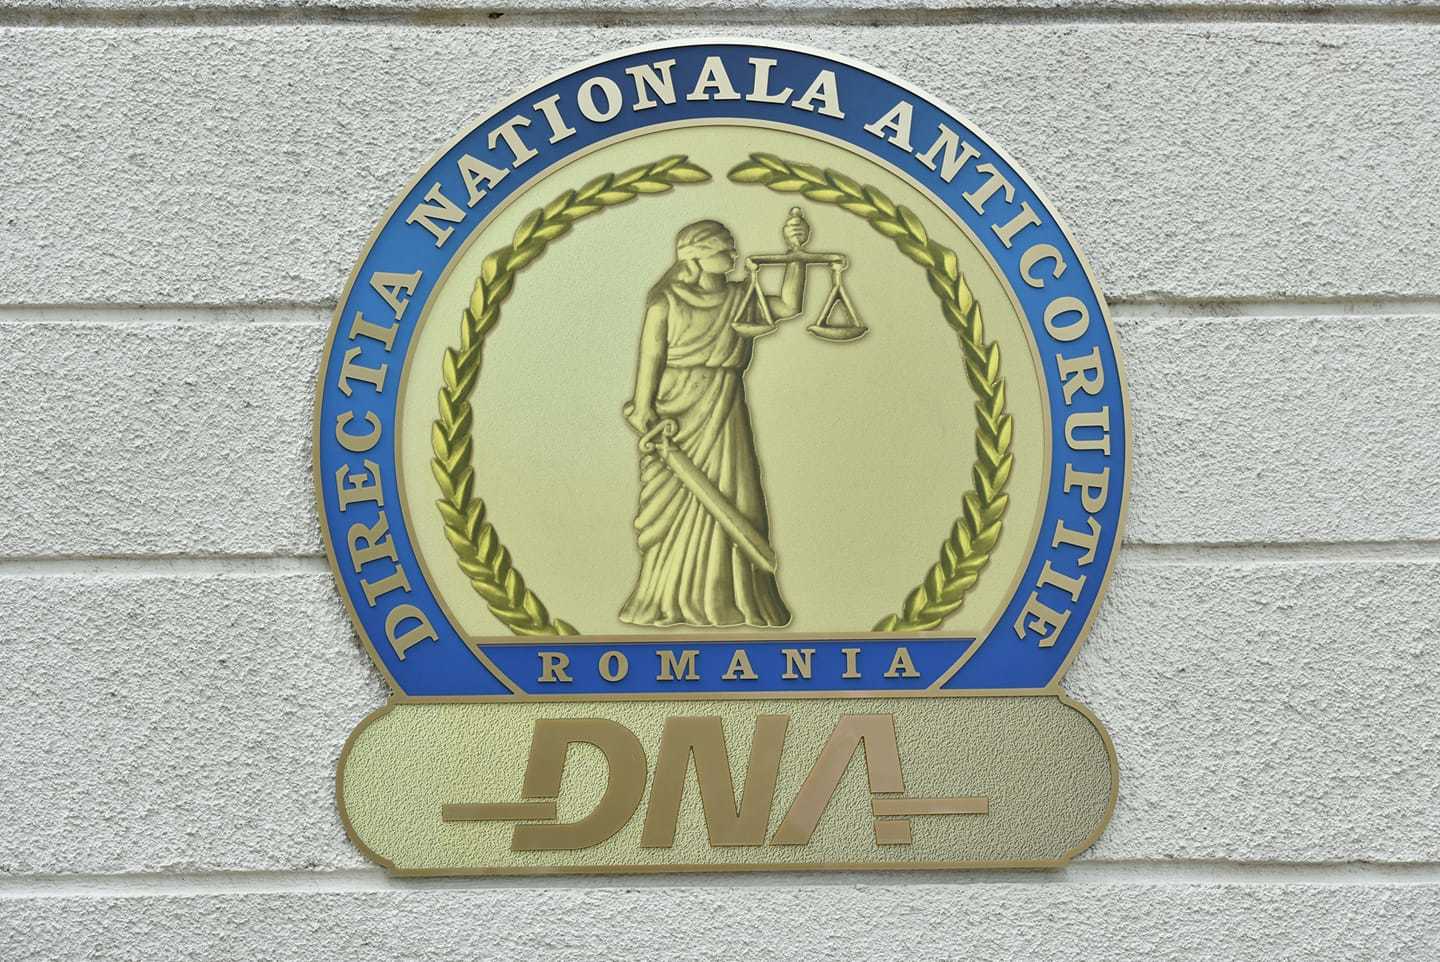 DNA: Şase persoane fizice şi o firmă, trimise în judecată pentru fraudă cu fonduri europene / Prejudiciul – peste 7 milioane de lei / S-ar fi depus documente false care atestau sprijinirea persoanelor vulnerabile pe piaţa muncii